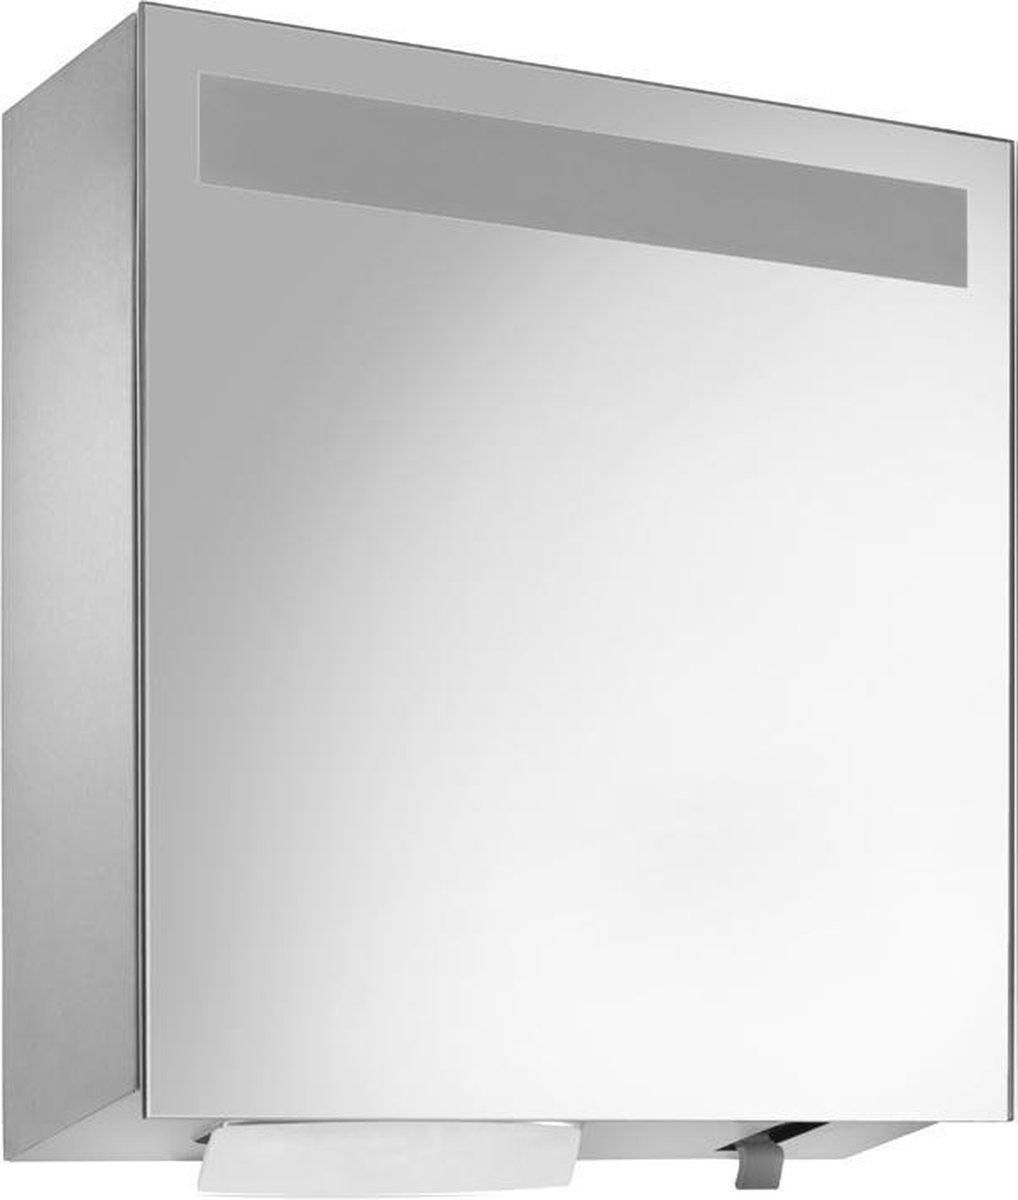 RVS spiegelkast WP650 met zeep- en handdoekdispenser van Wagner EWAR